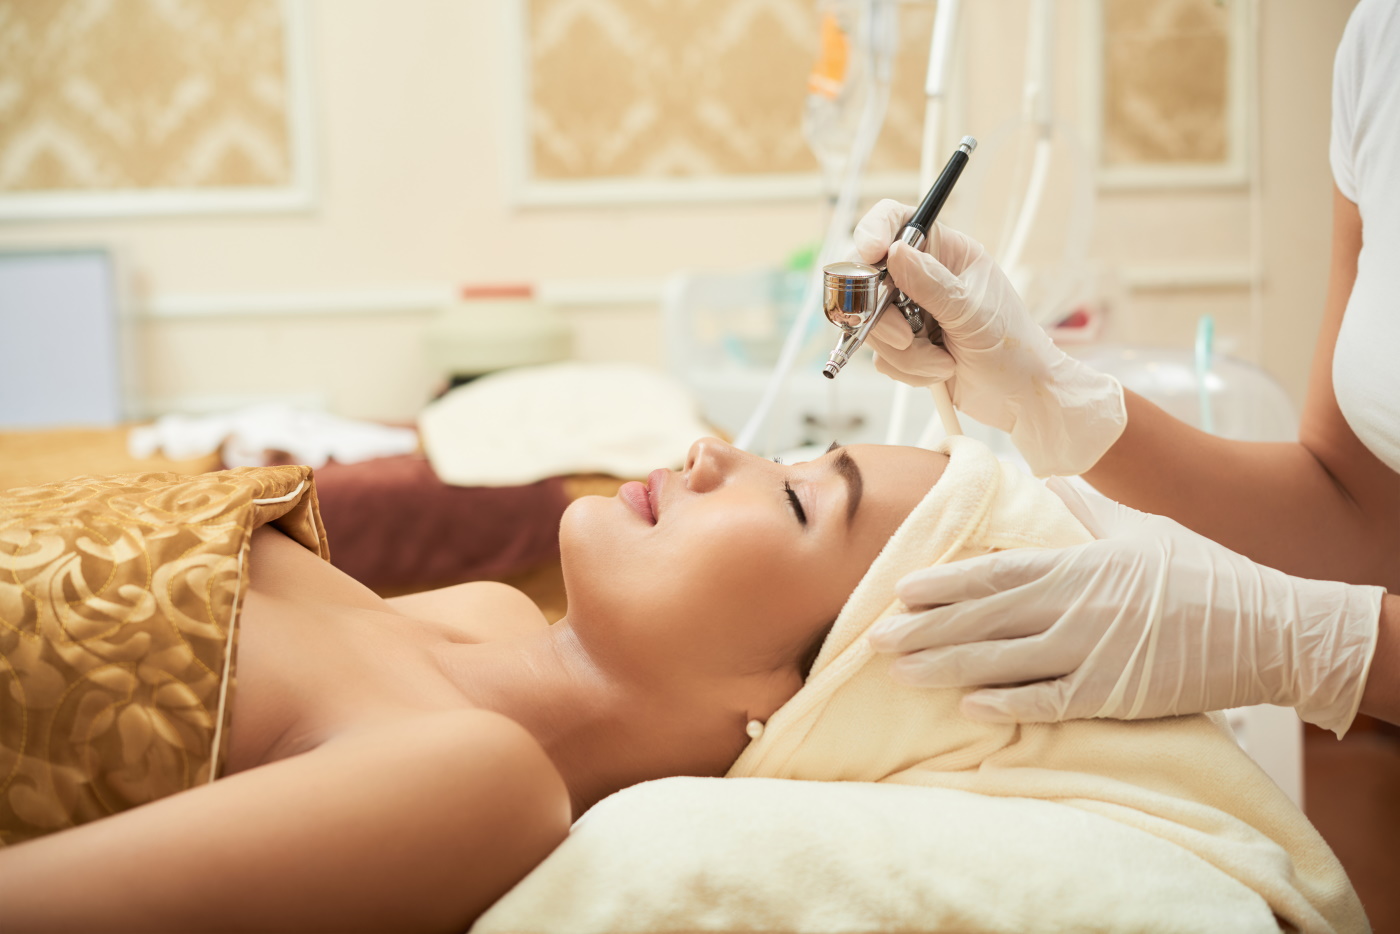 Kosmetologia bioestetyczna – co to jest? Definicja, zabiegi, wskazania